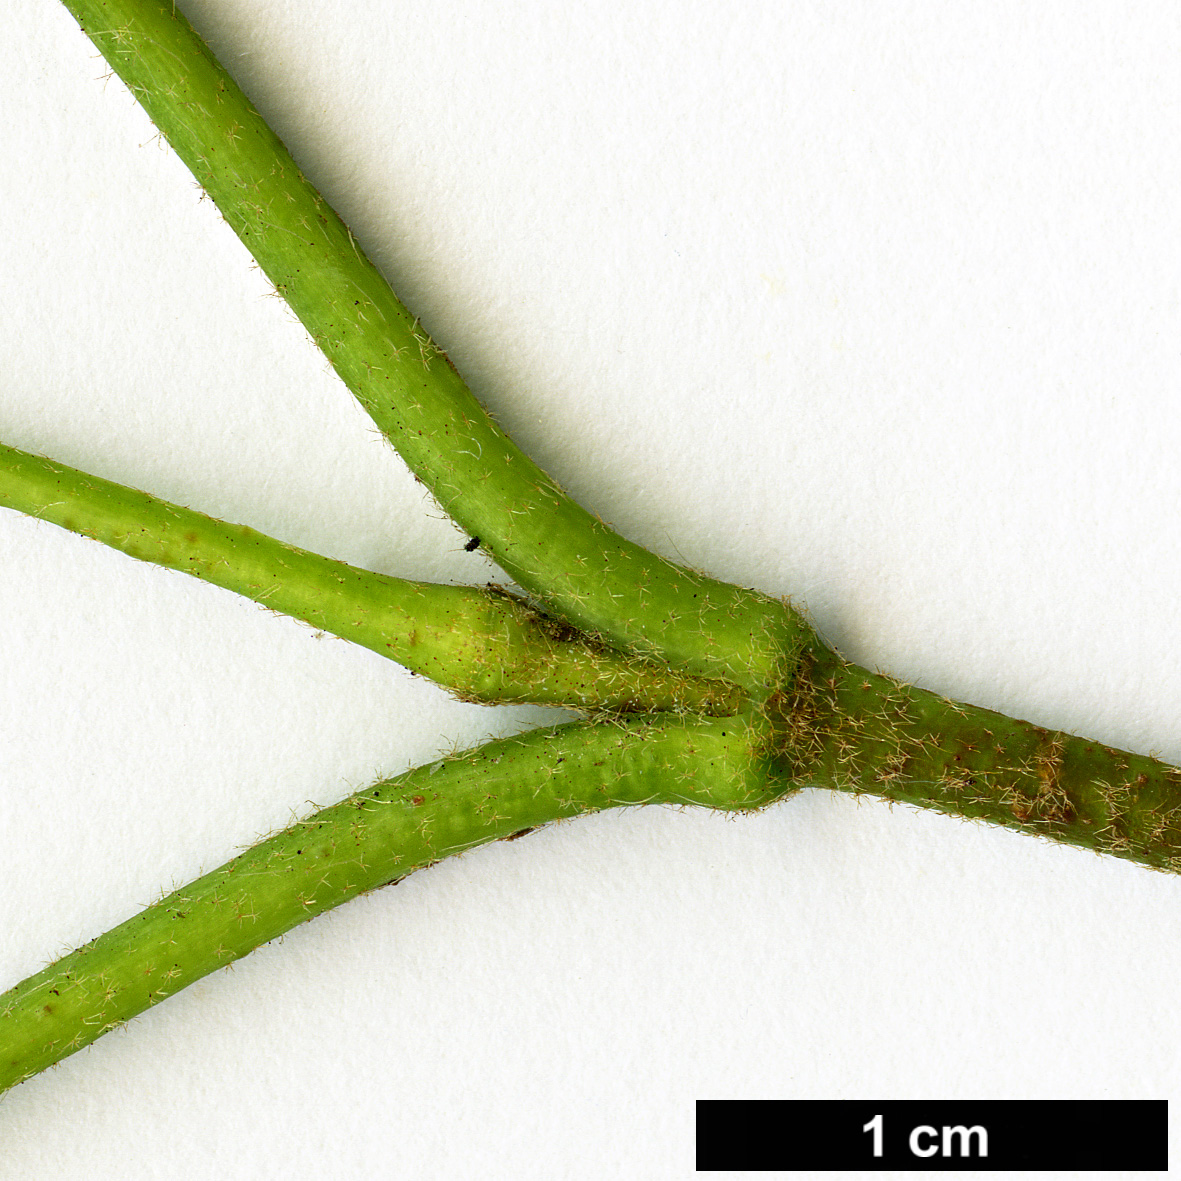 High resolution image: Family: Adoxaceae - Genus: Viburnum - Taxon: dentatum - SpeciesSub: var. pubescens